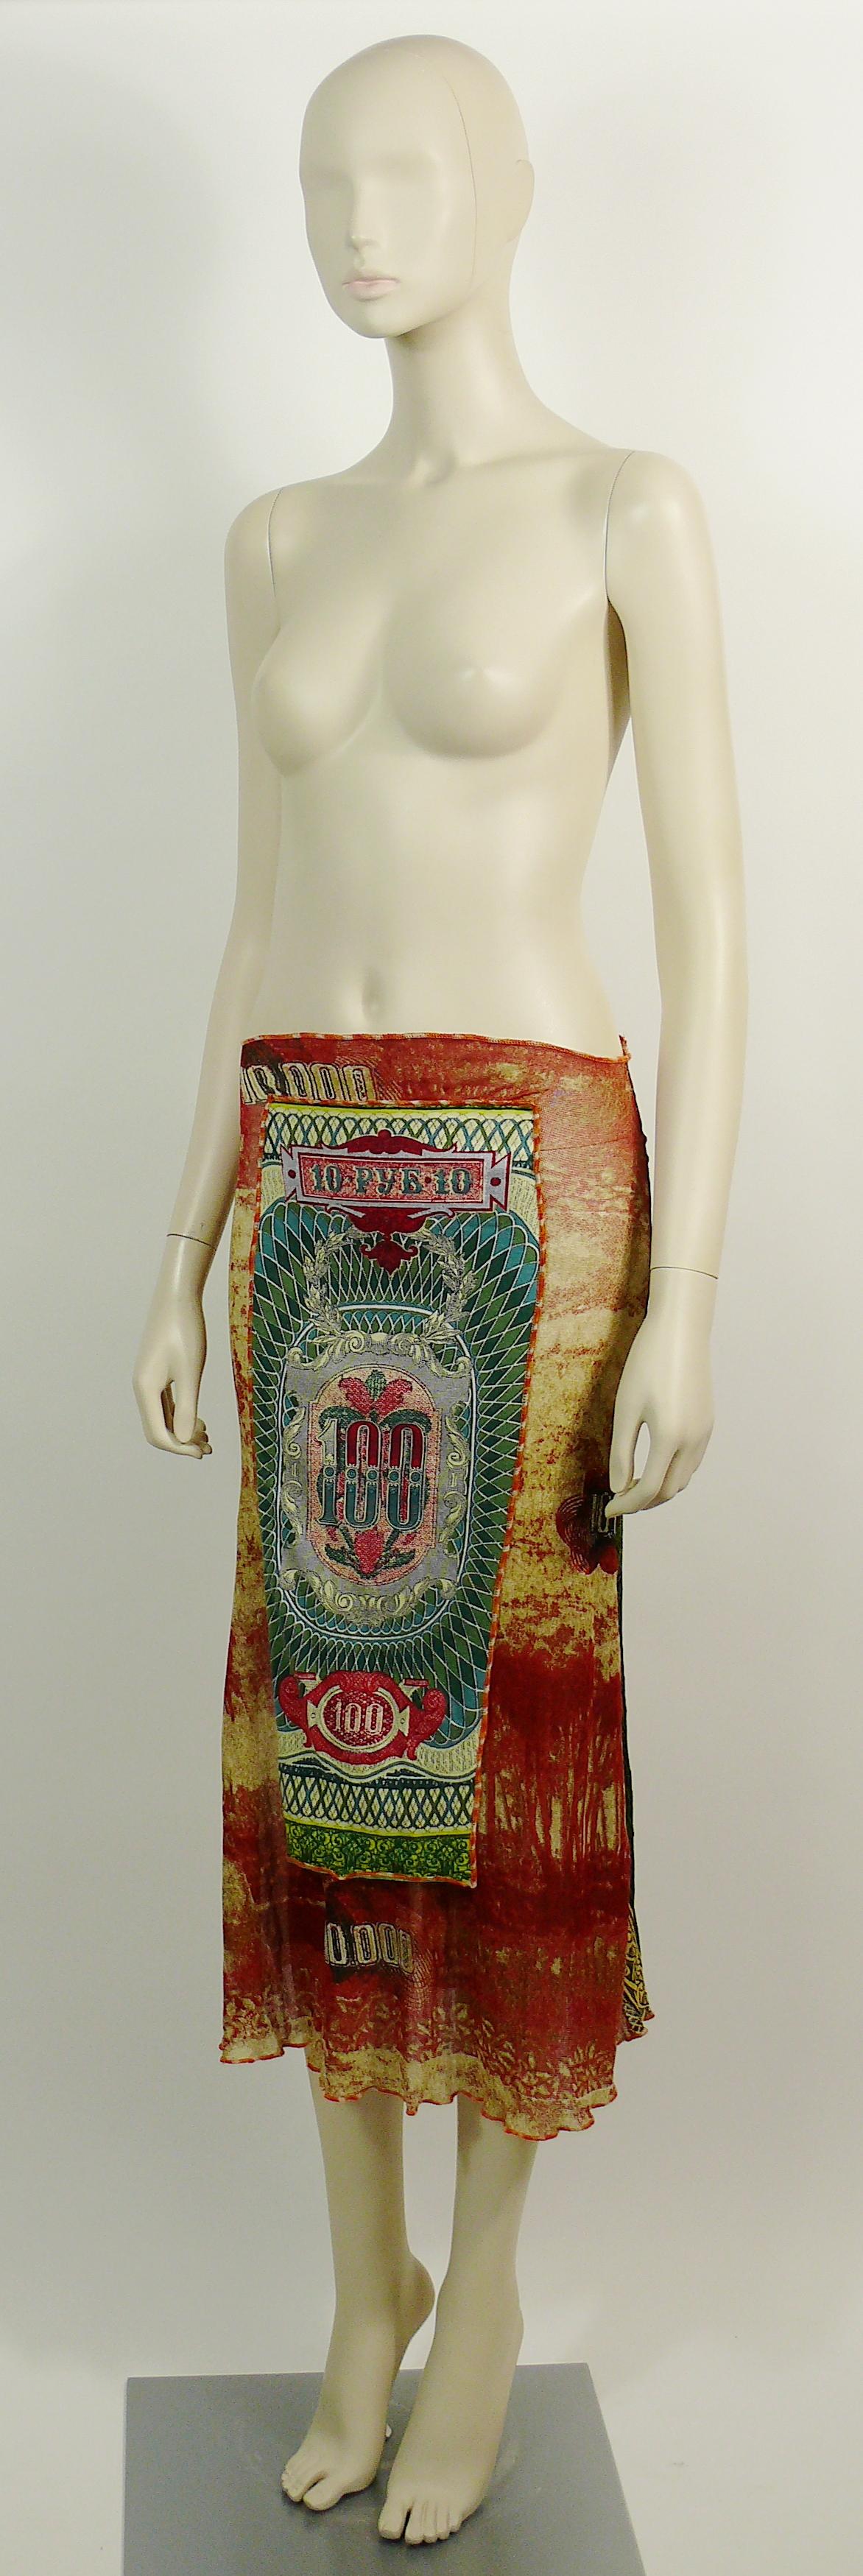 Jean Paul Gaultier Vintage Rouble Banknote Print Skirt 1